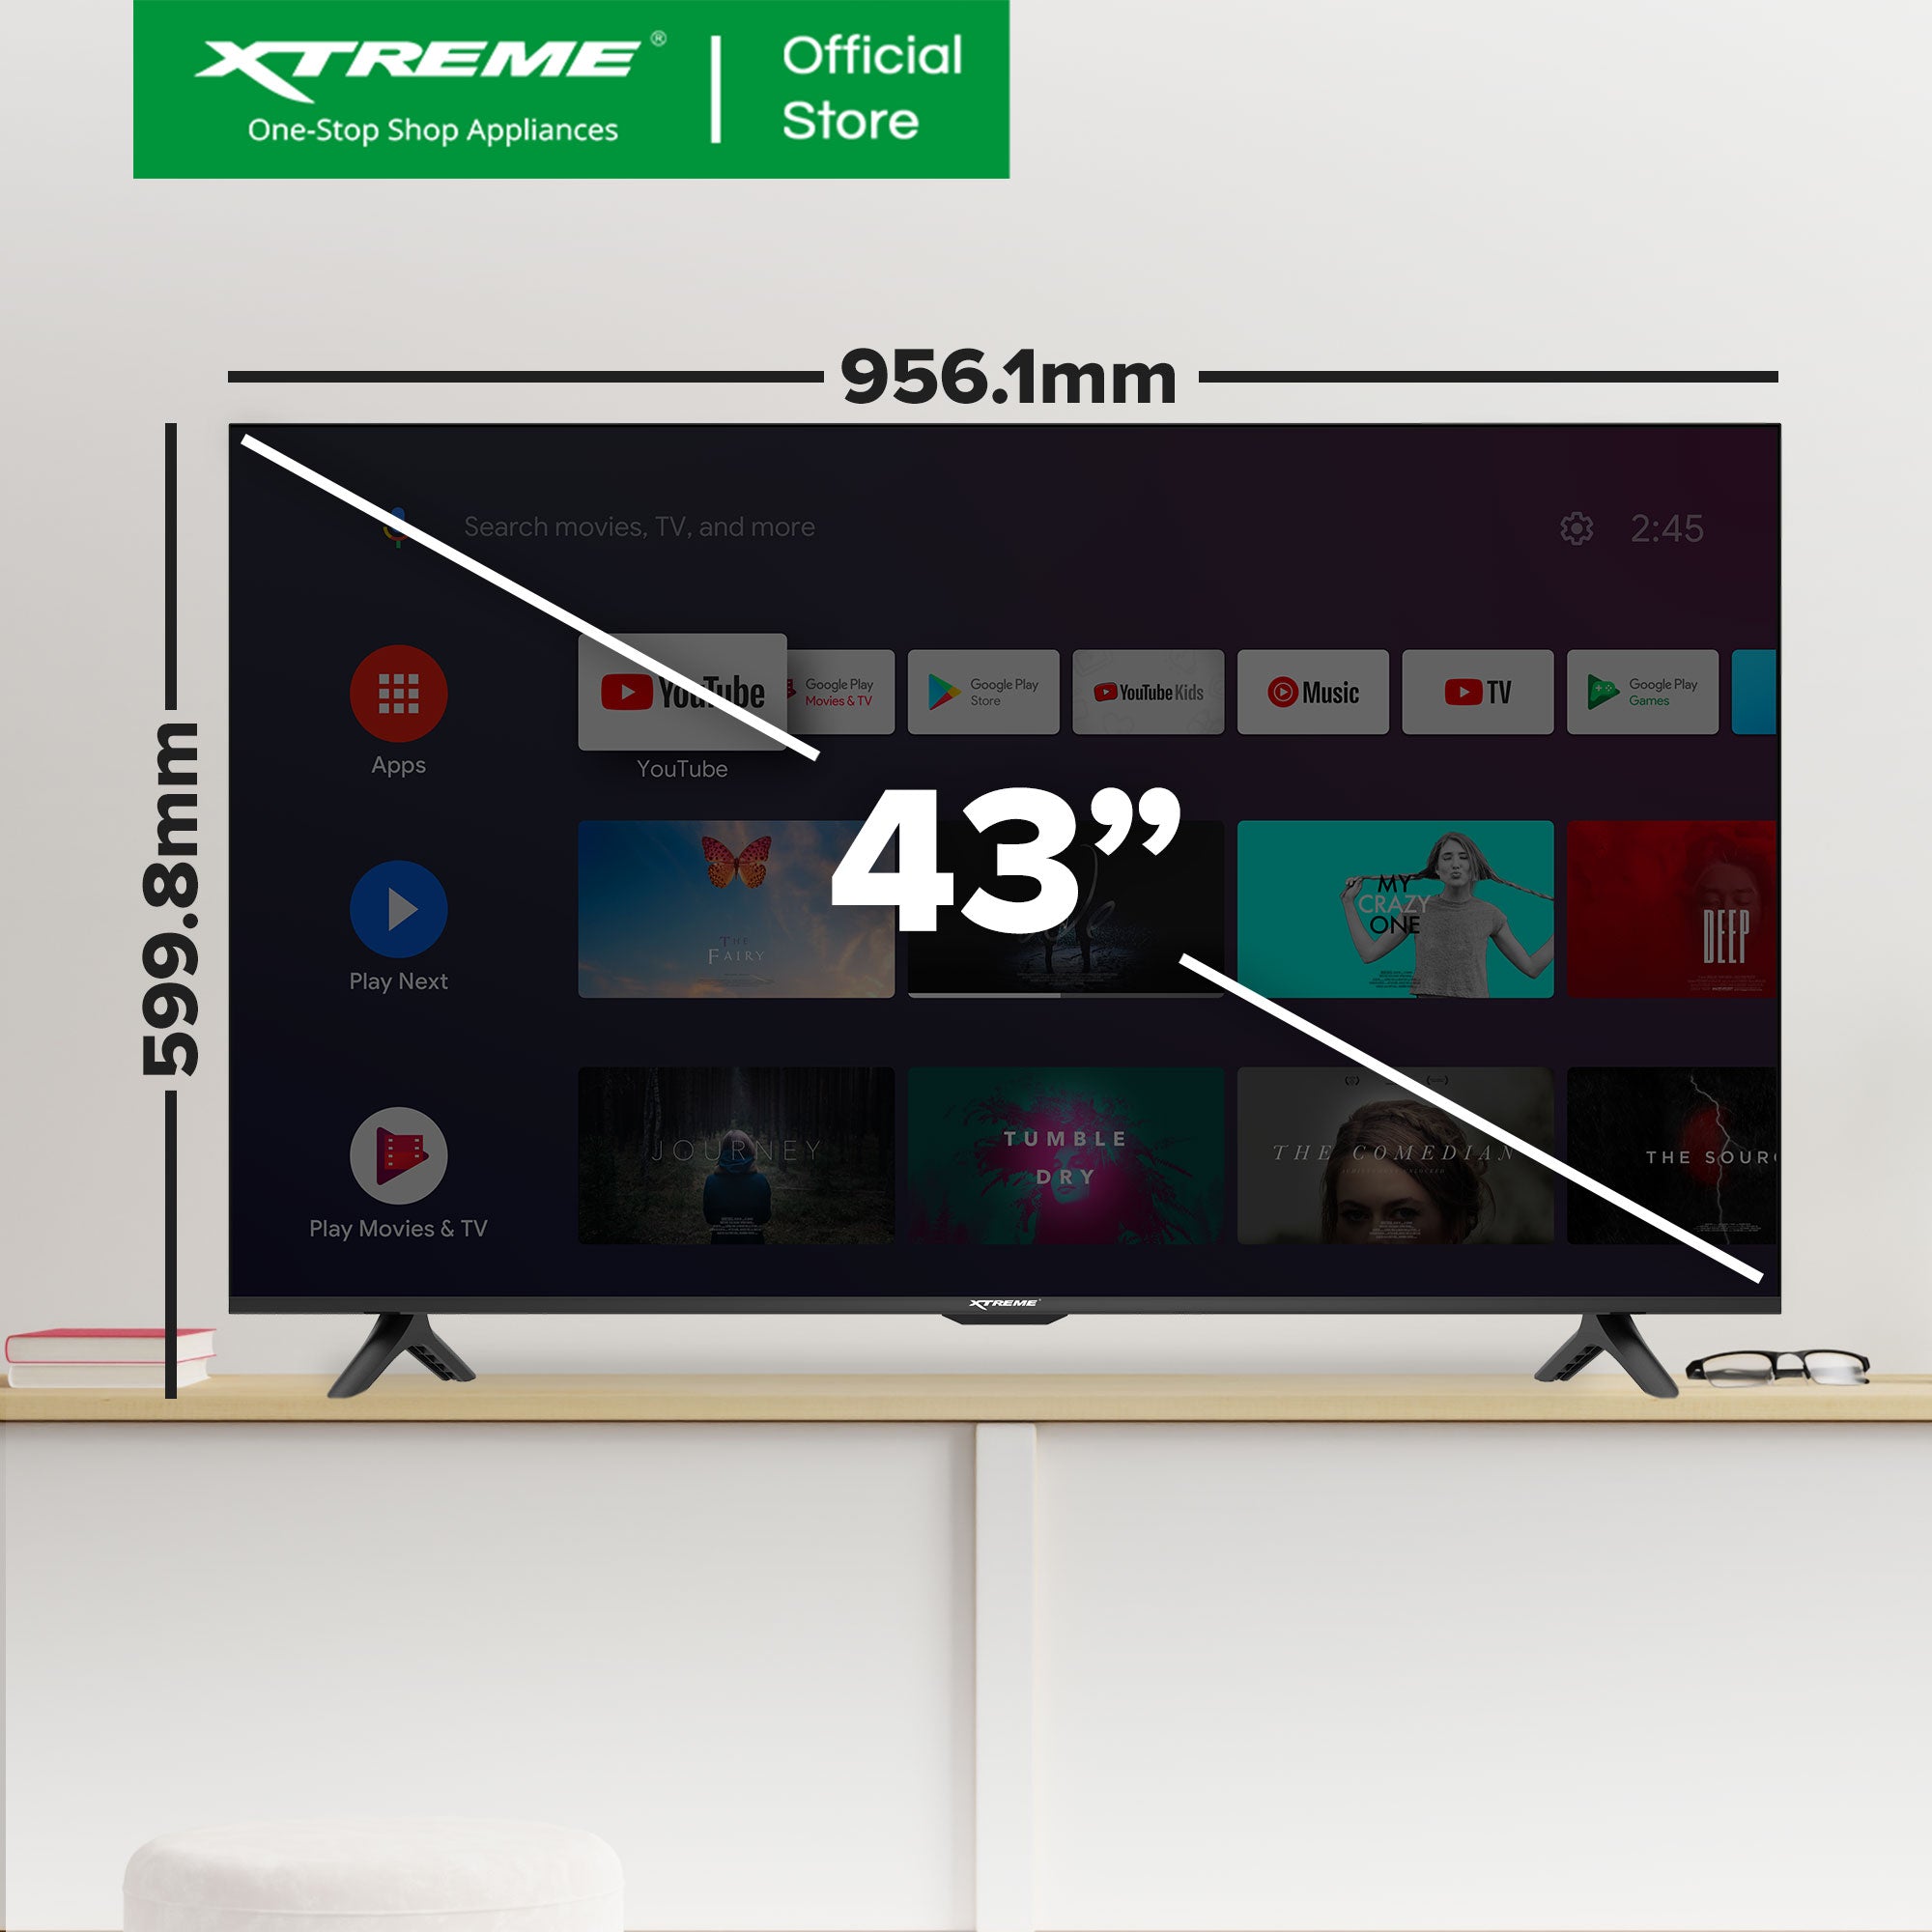 43-inch XTREME ANDROID TV | MF-4300SA